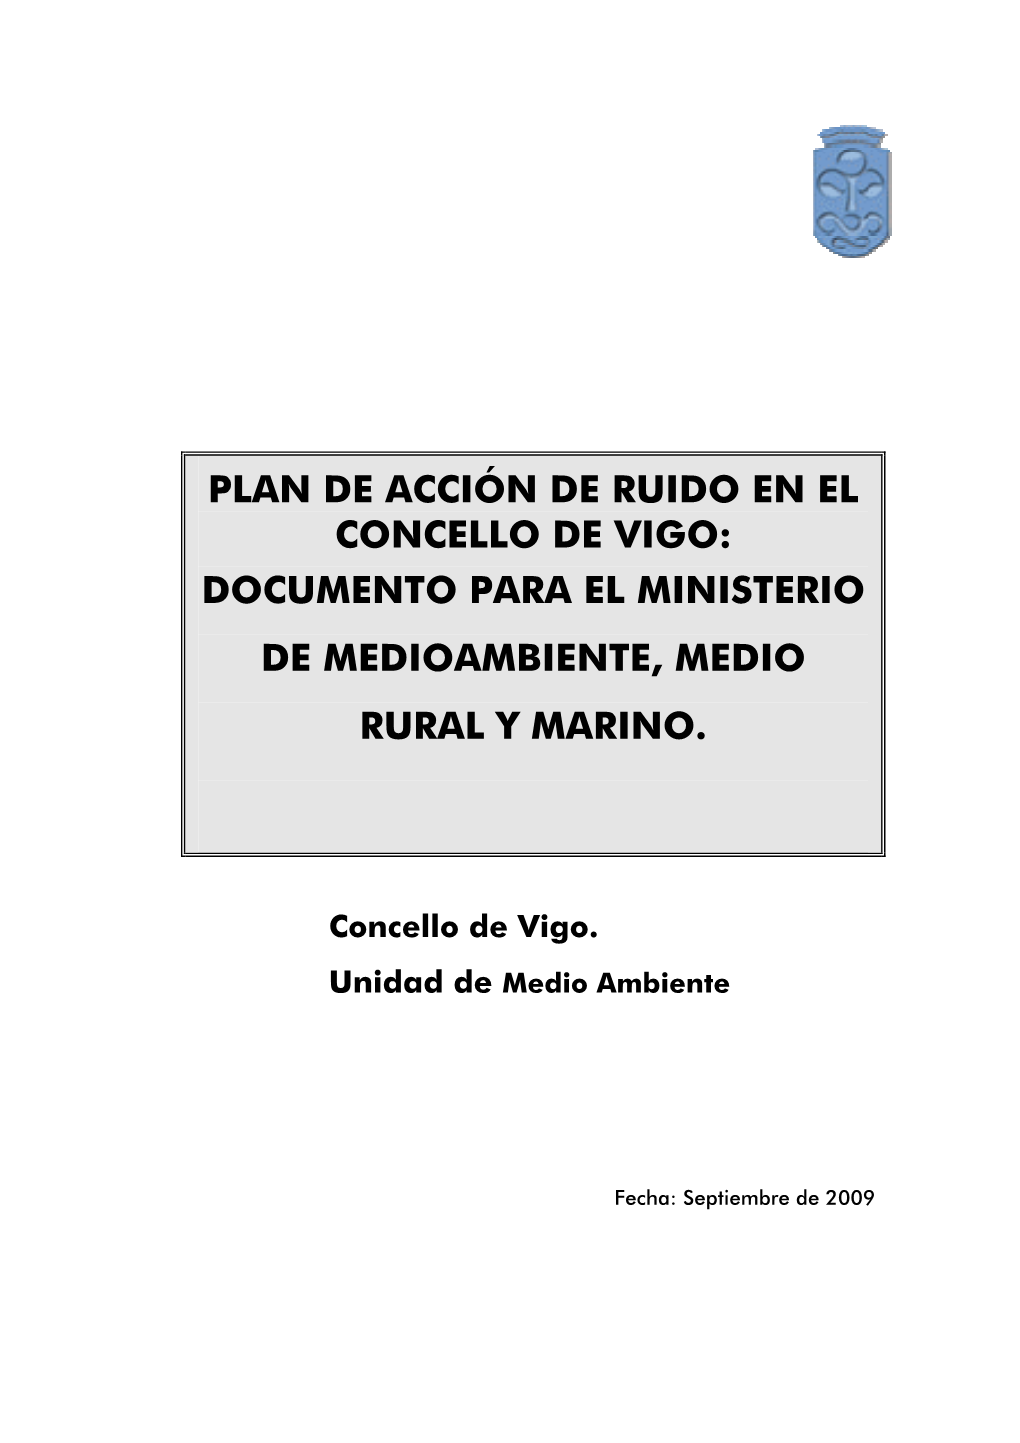 Plan De Acción De Ruido En El Concello De Vigo: Documento Para El Ministerio De Medioambiente, Medio Rural Y Marino